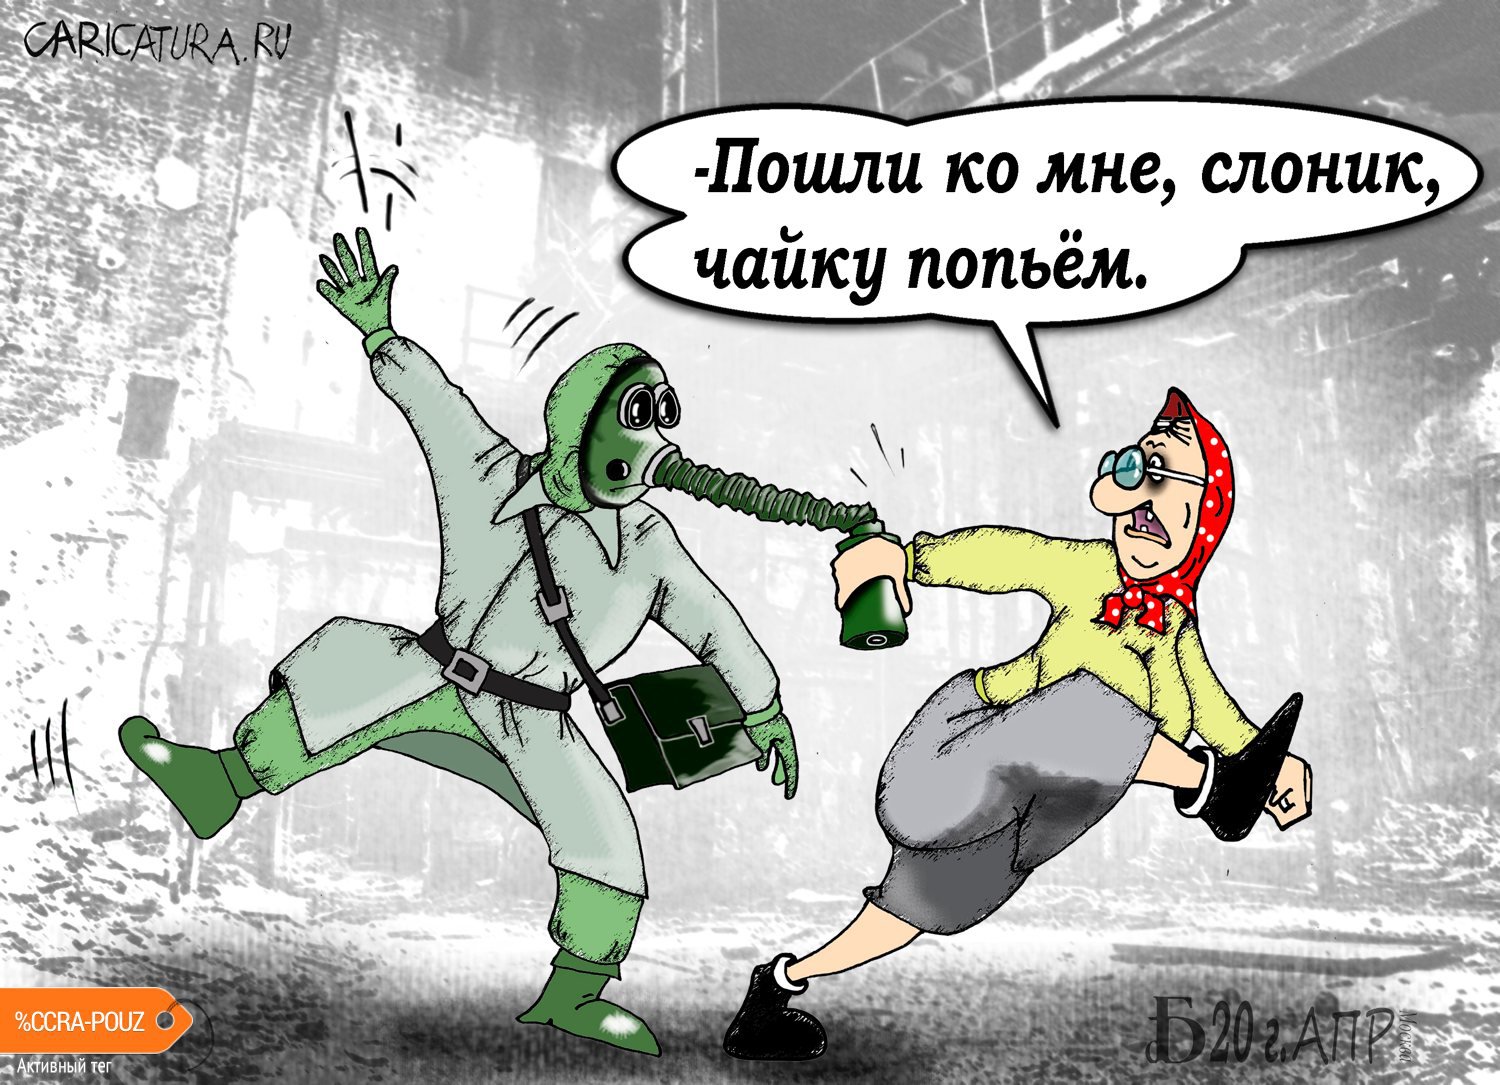 Карикатура "Про чаёк", Борис Демин